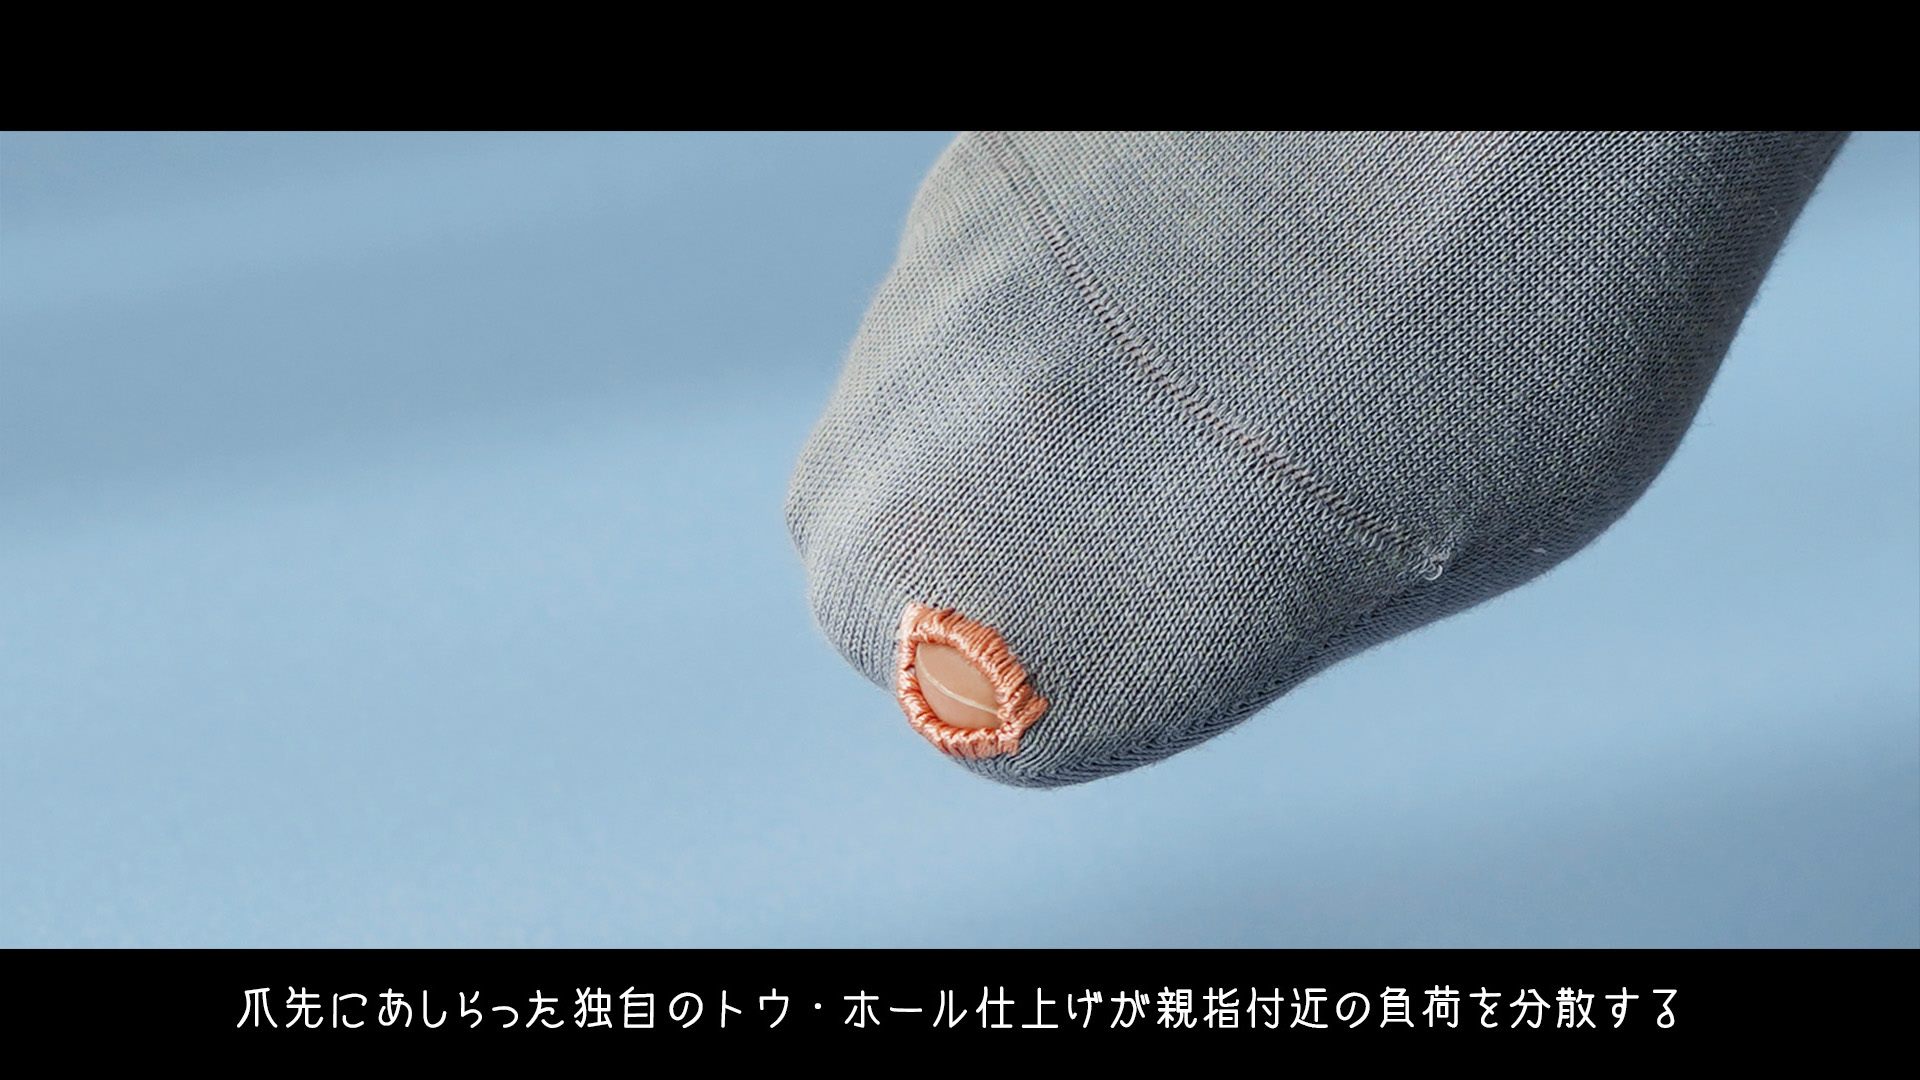 Японские носки с дырками